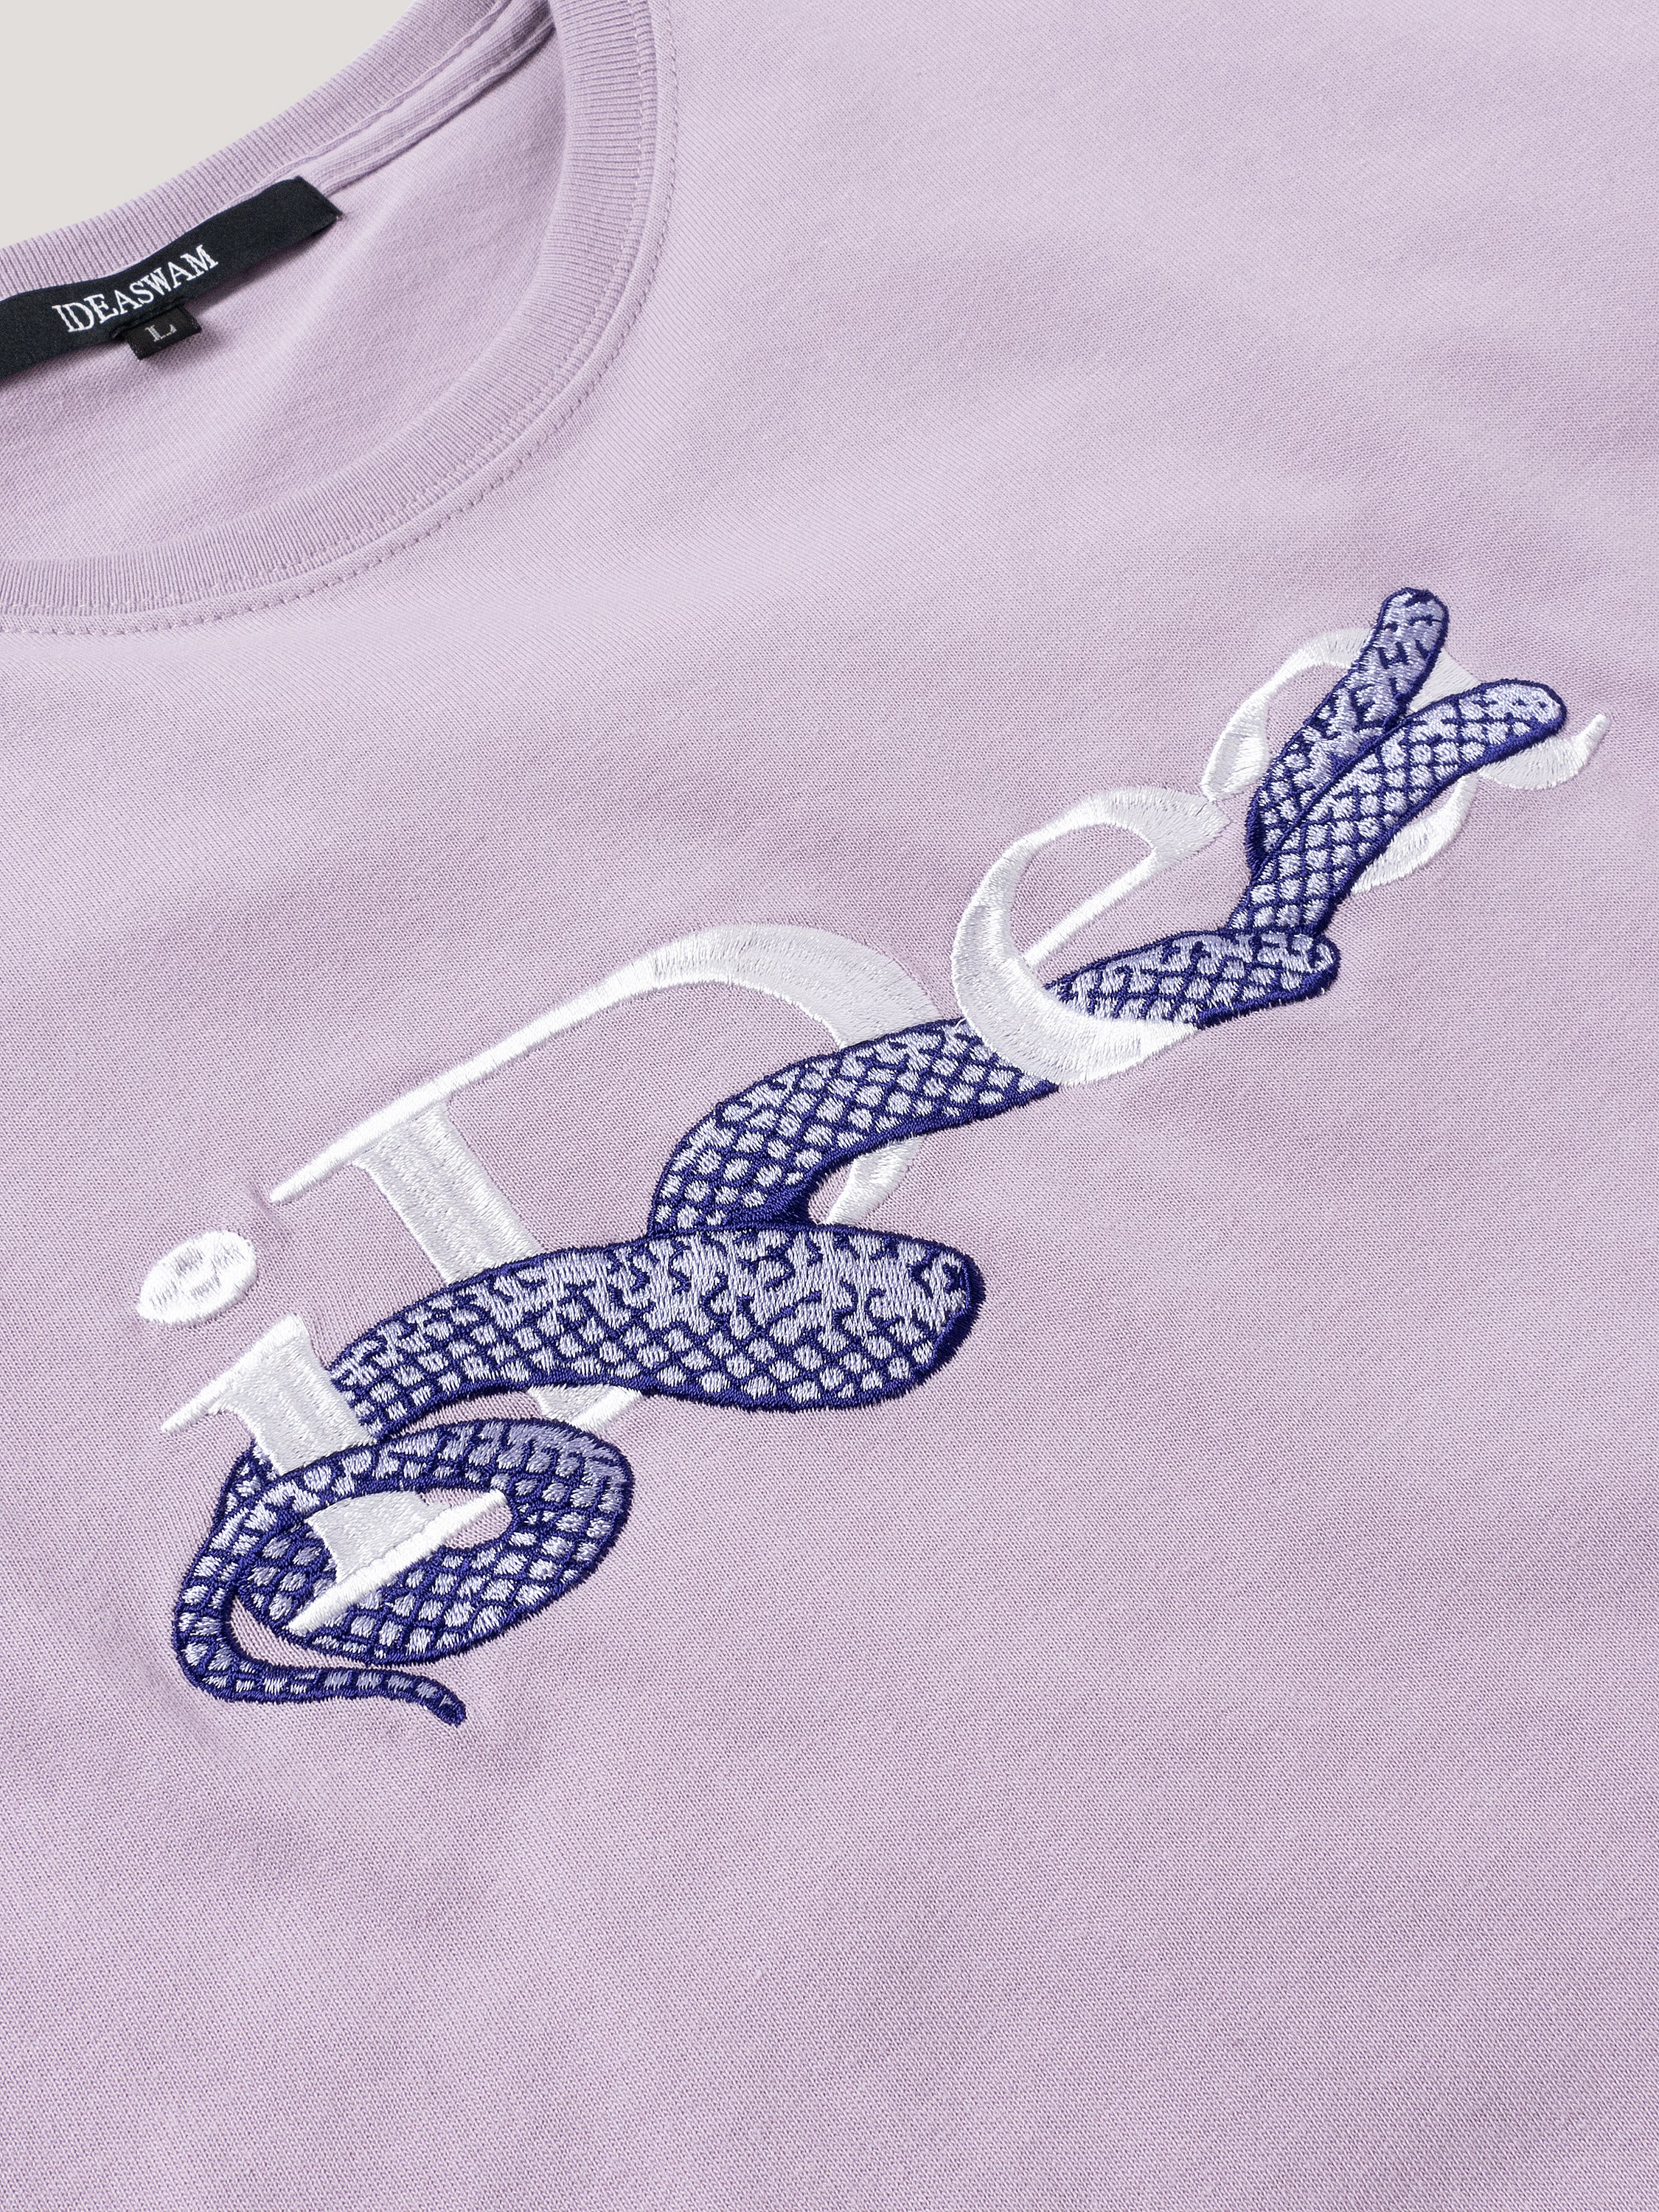 Snake Logo Tee (Smokey Purple)